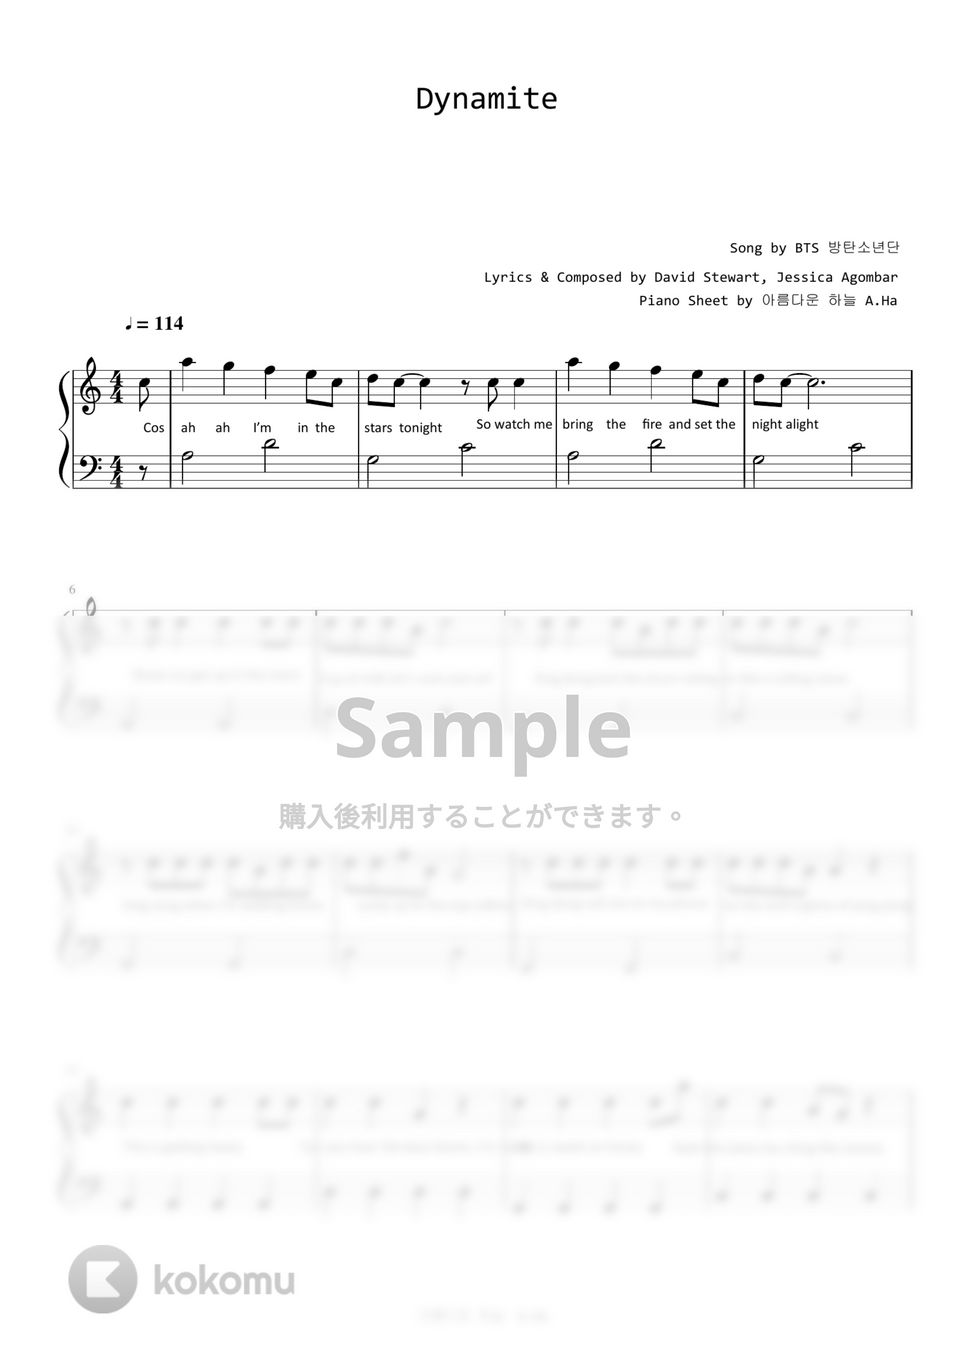 防弾少年団(BTS) - Dynamite (Level 1 -Very Easy) by A.Ha